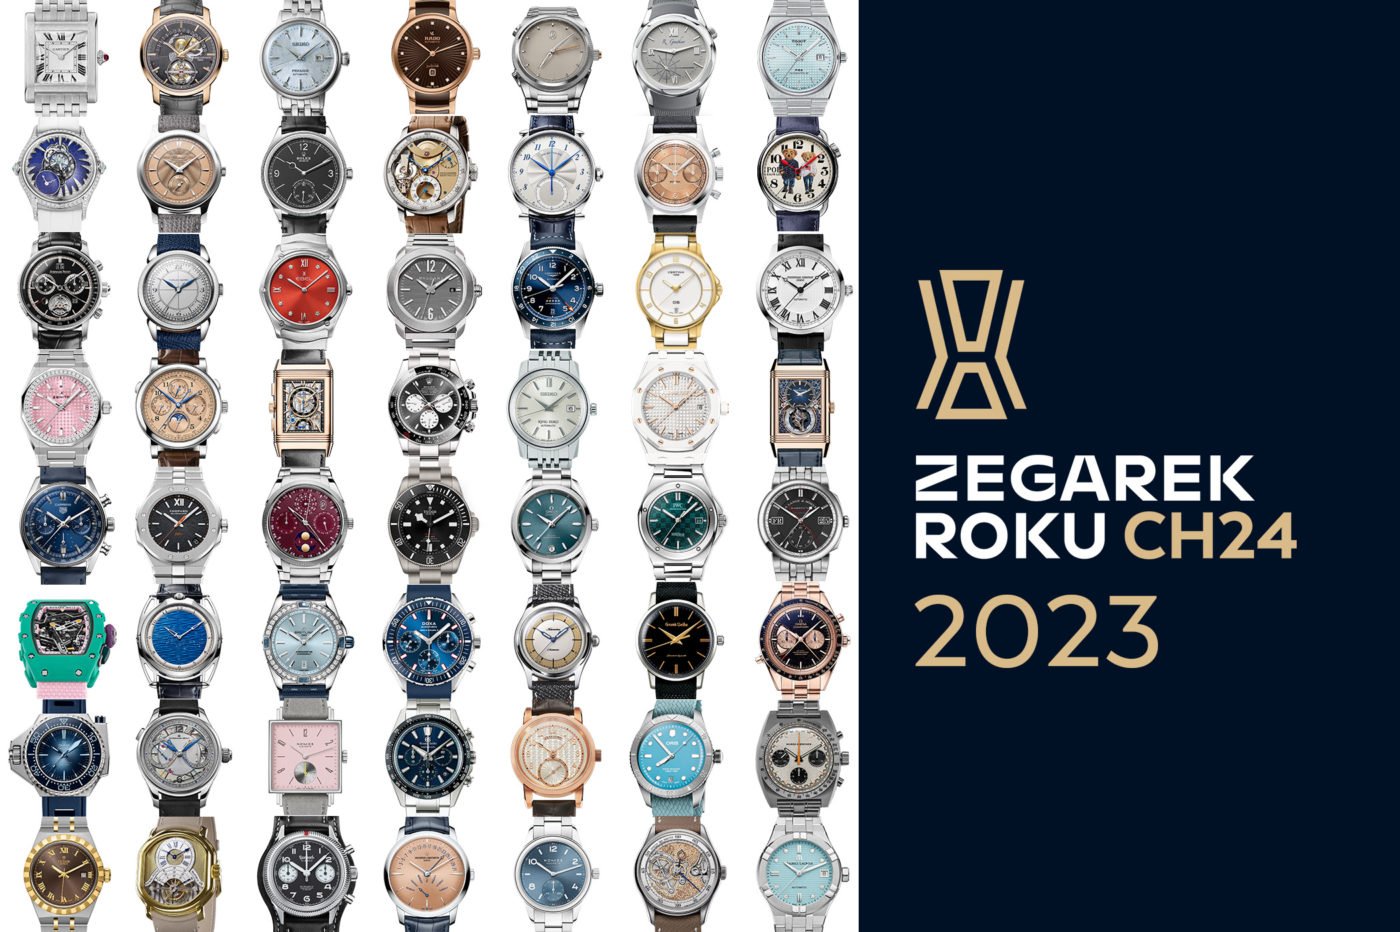 Zegarek Roku CH24 – rusza 14. edycja konkursu!